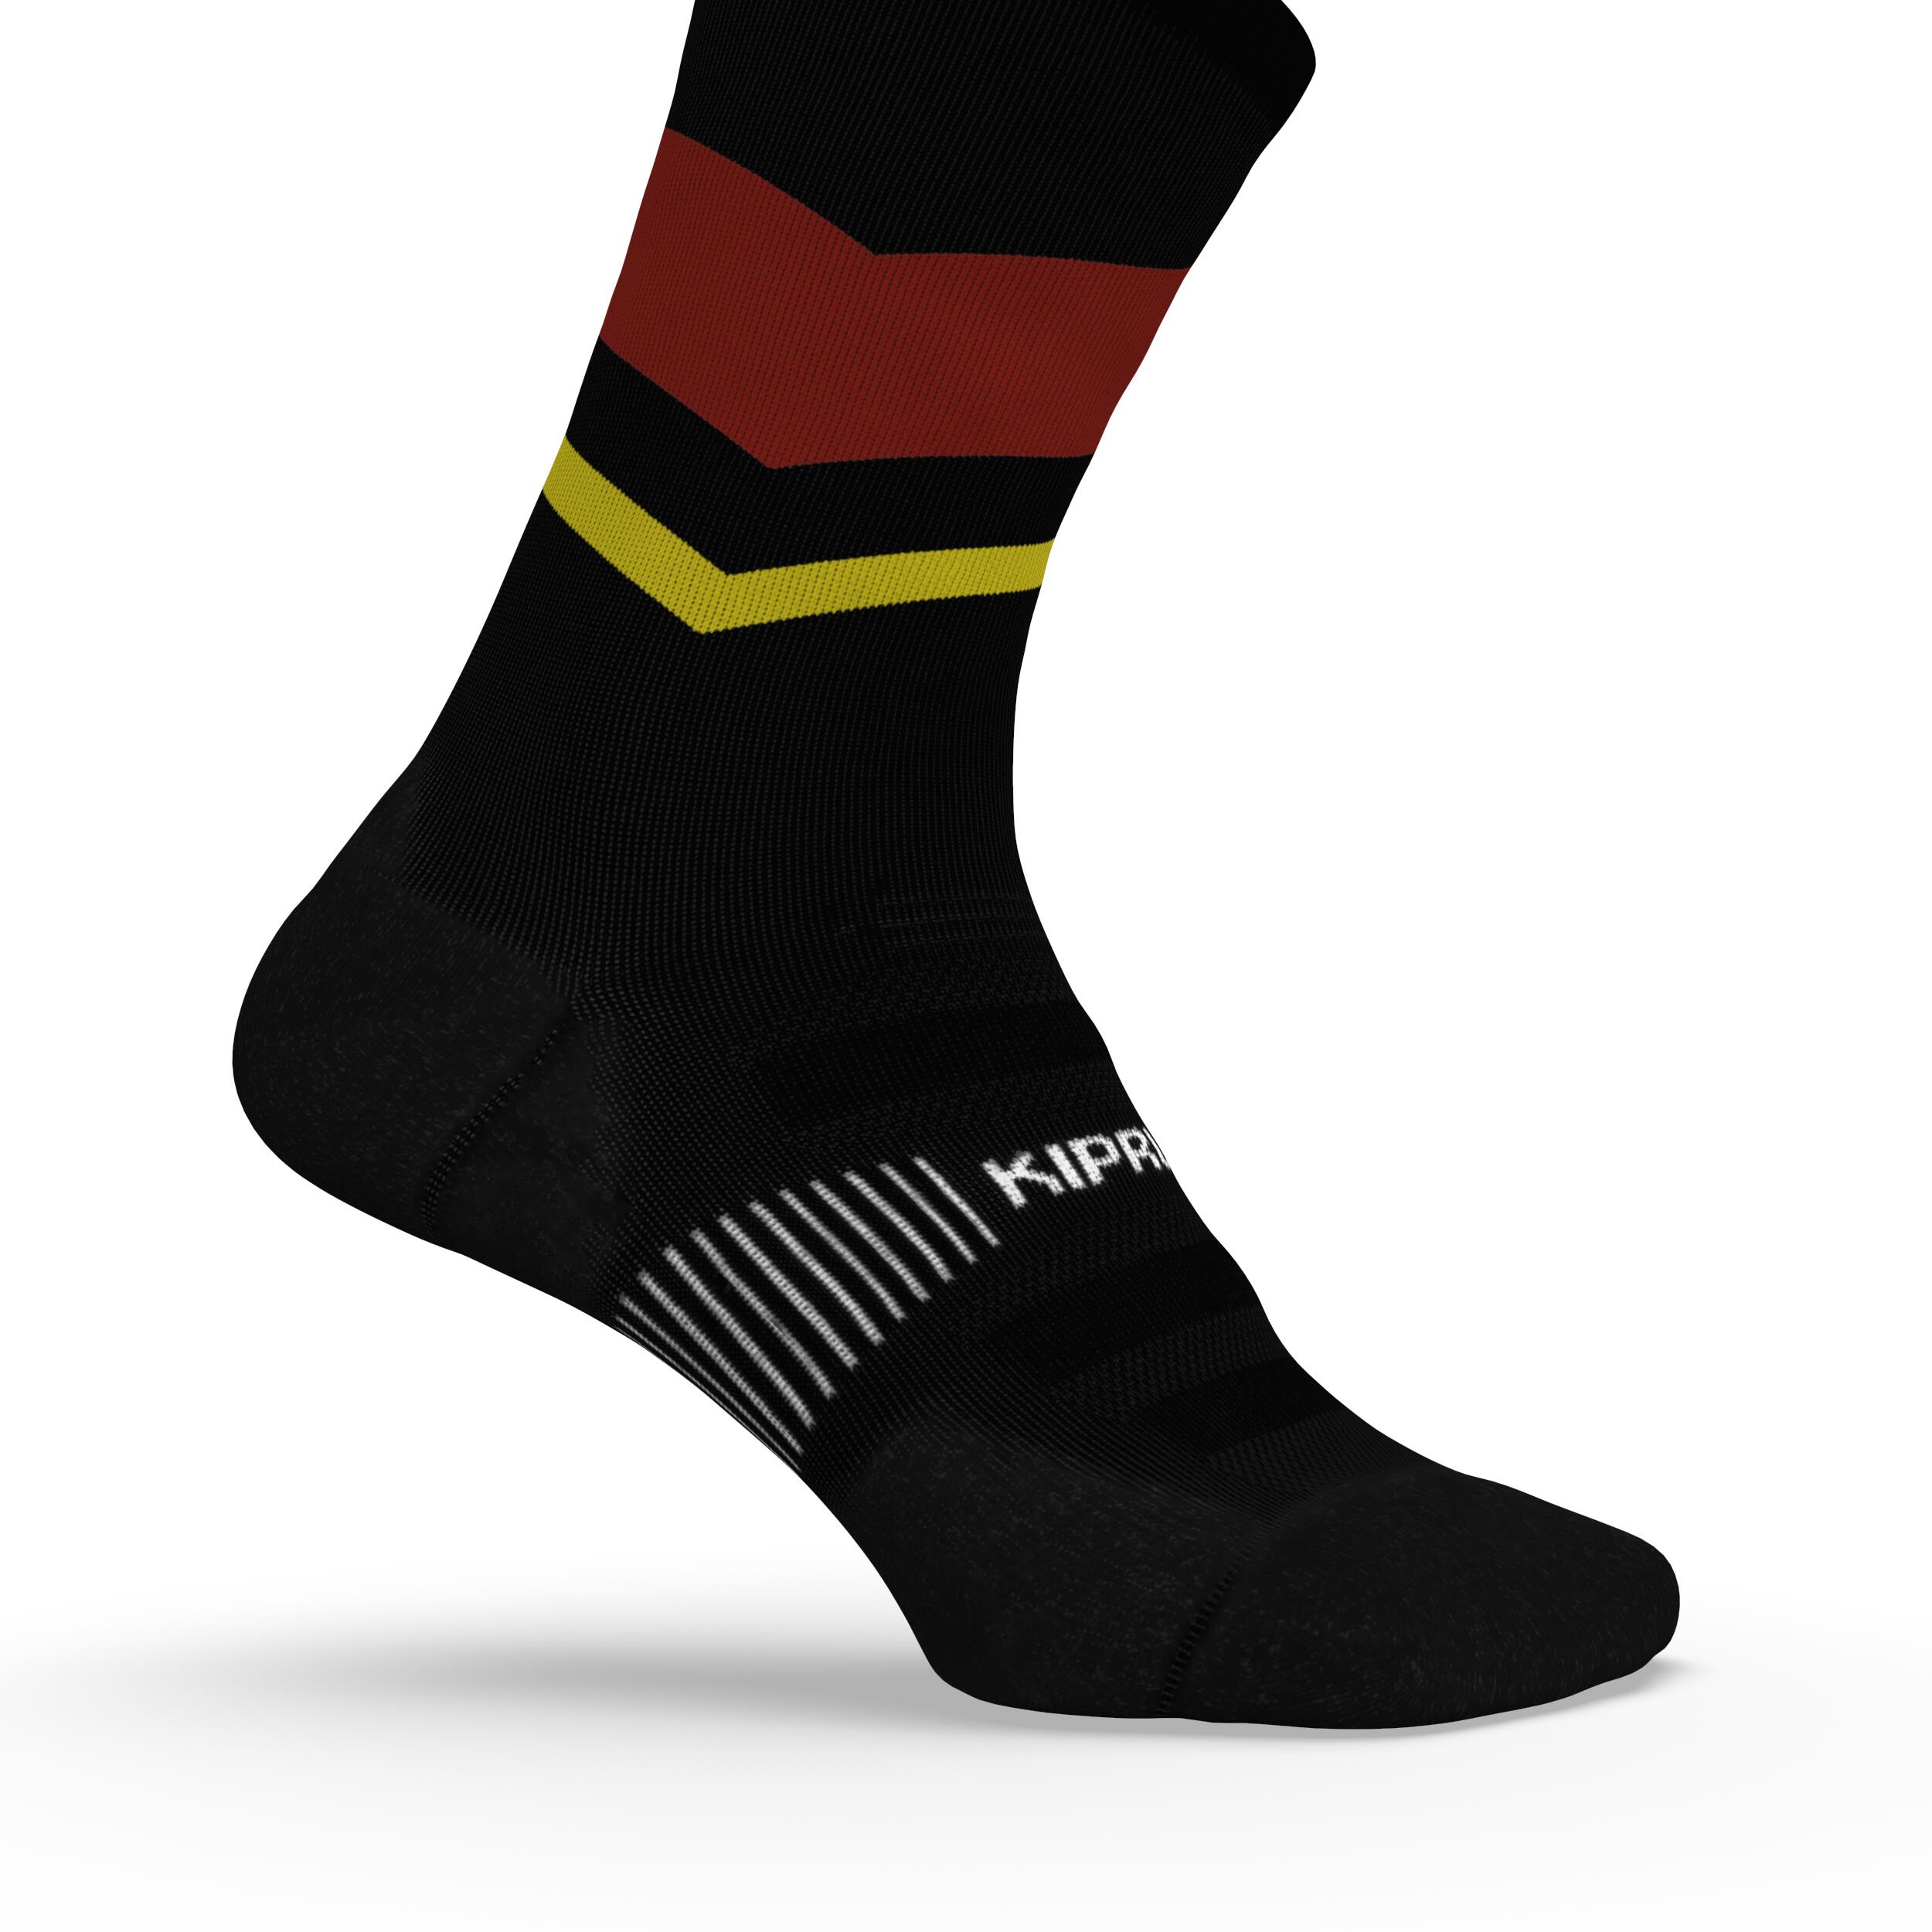 Run900 Mid-Calf Thick Running Socks - Black/Red/Yellow 4/6